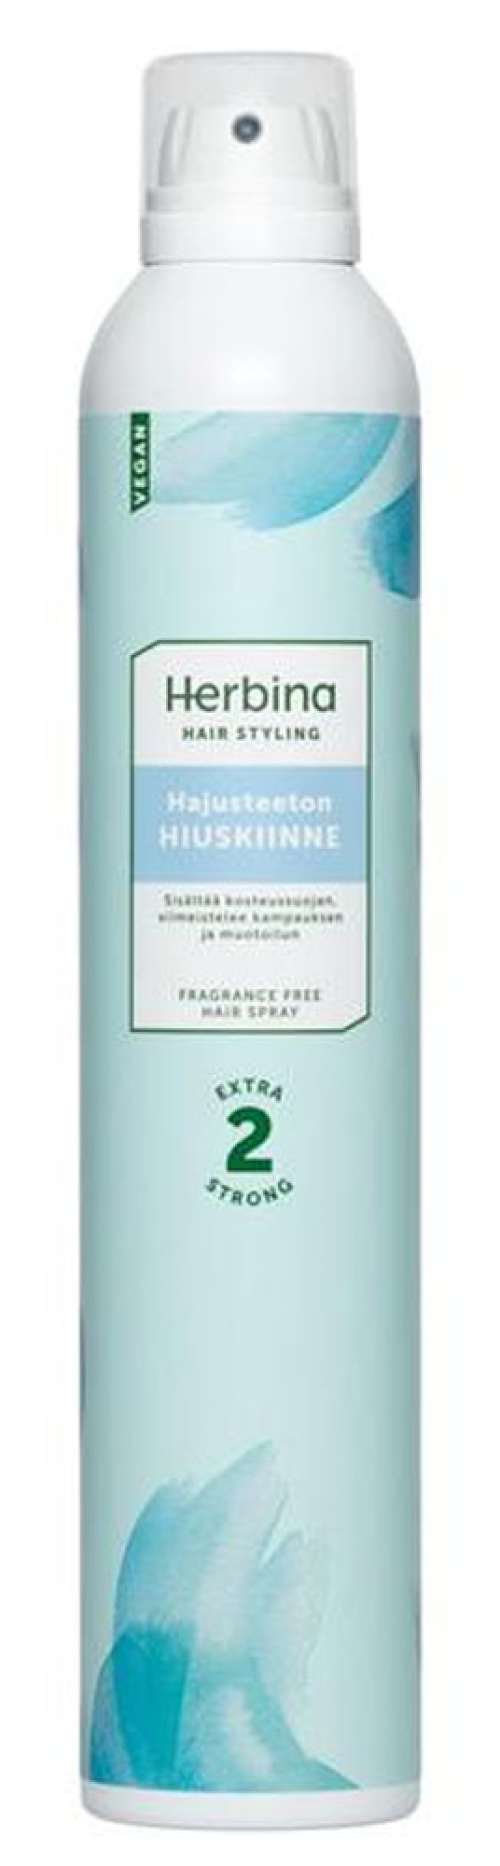 Herbina Senstive лак для волос 400 мл